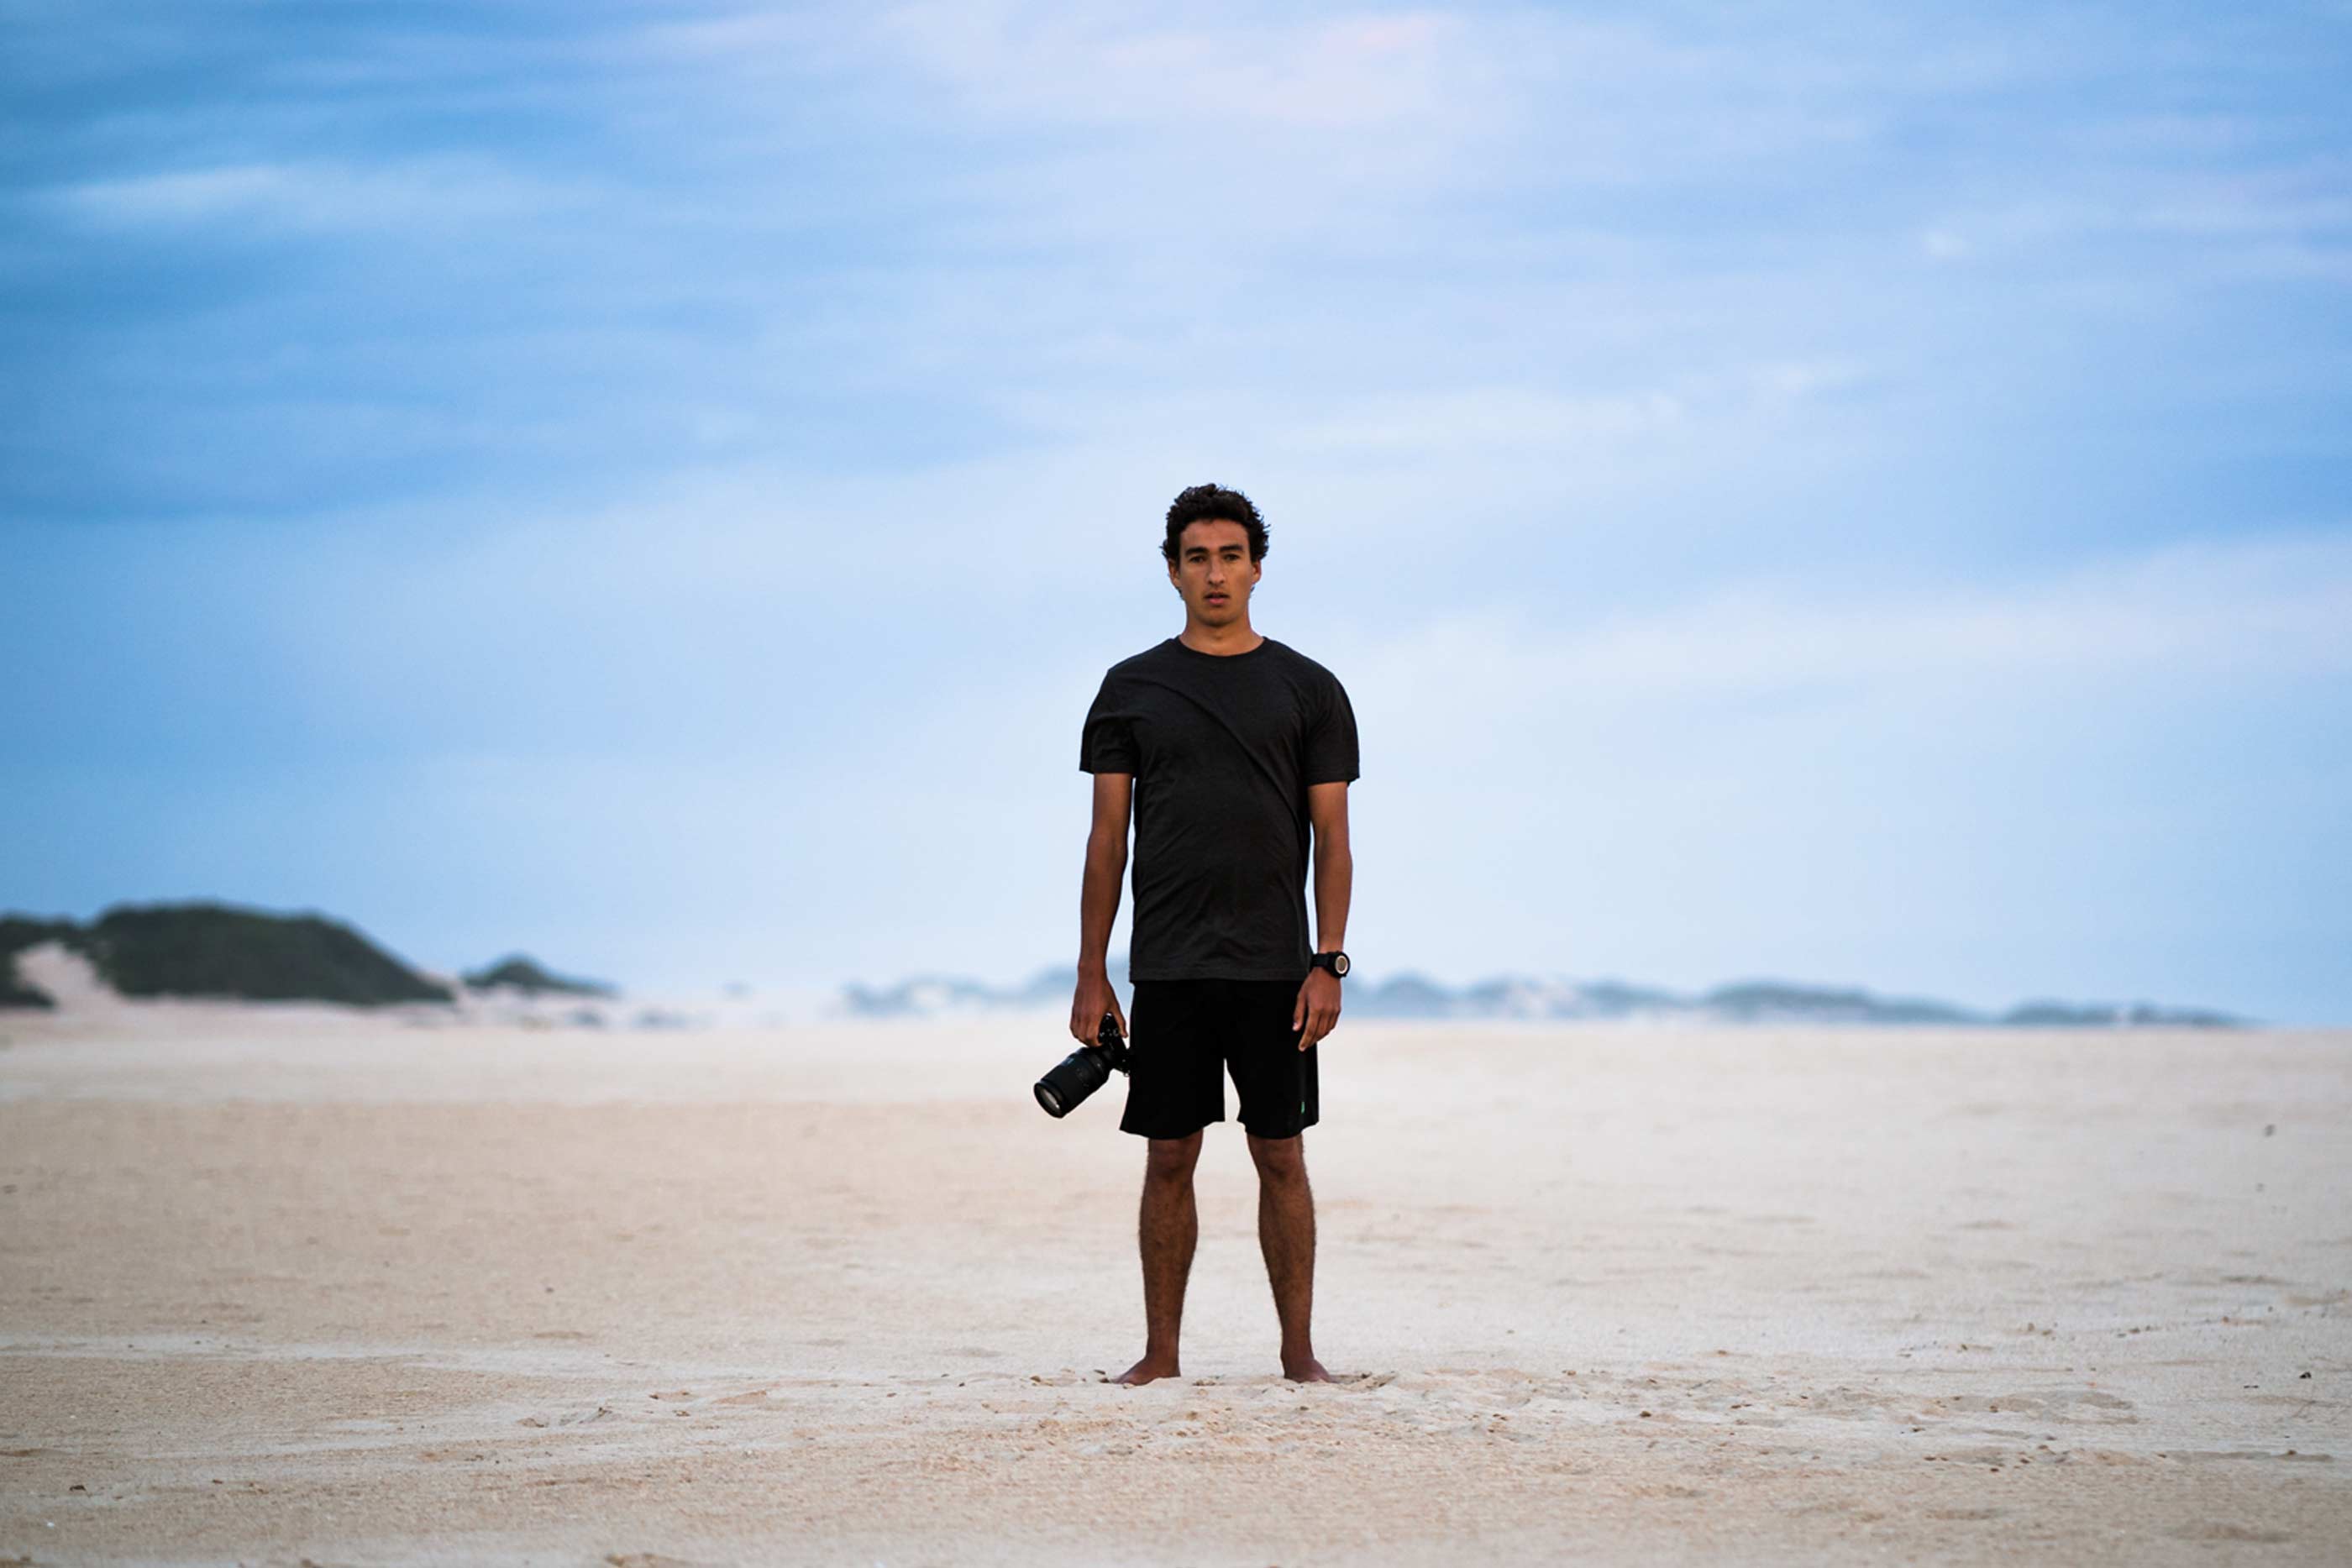 Rapaz, em pé, no centro da imagem, com máquina fotográfica na mão. No fundo, areia e céu azul.